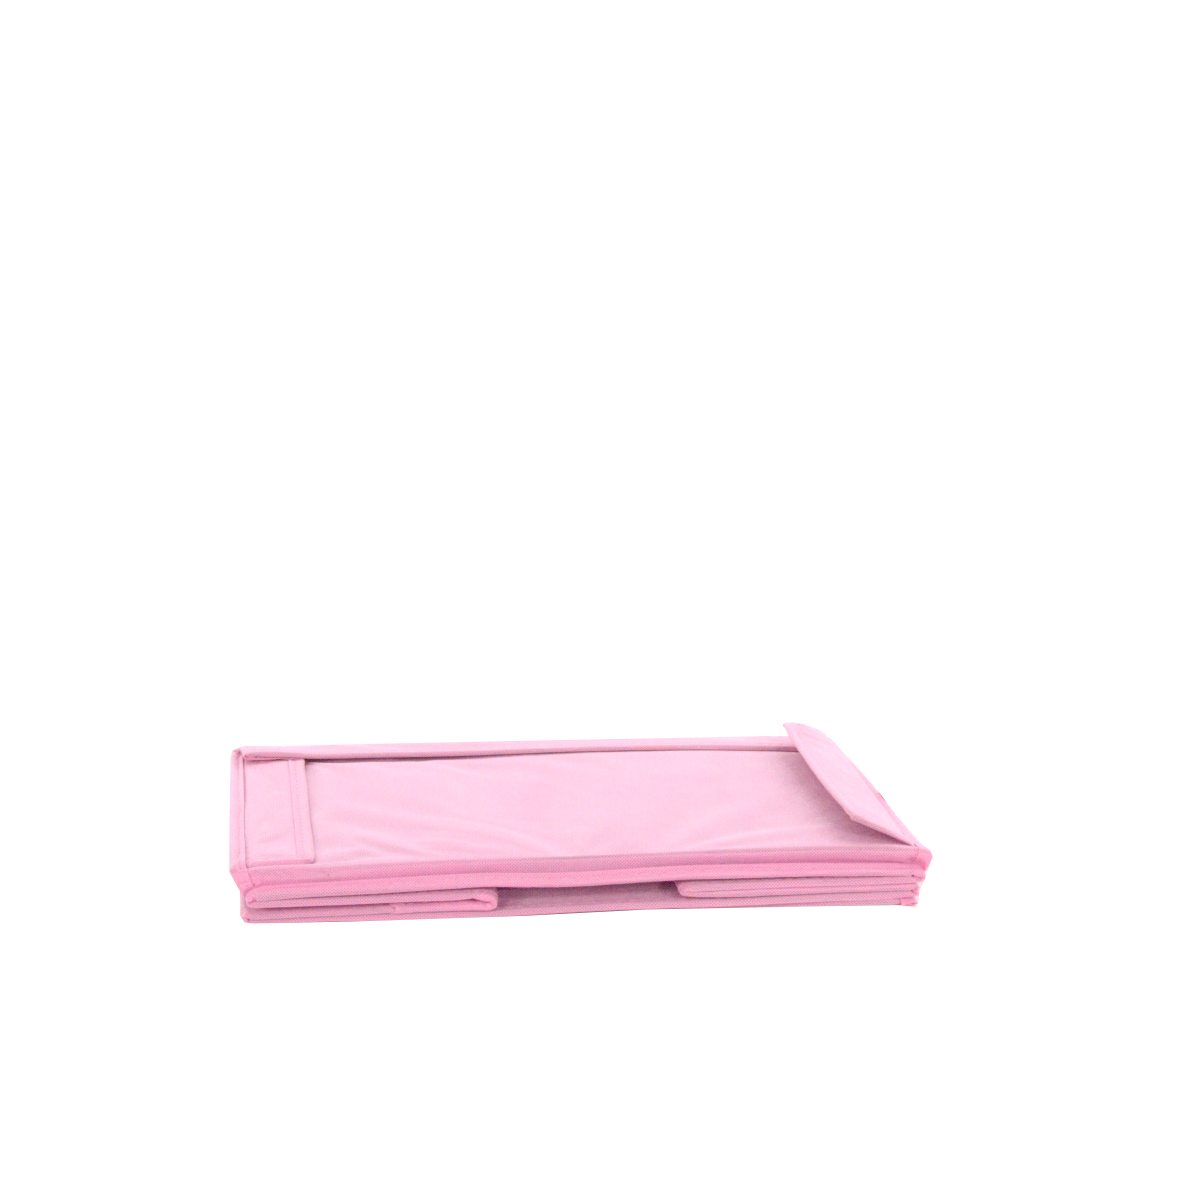 Vies sap Ongunstig Opbergdoos Textiel 40X30X20 cm Roze Opbergbox voor kleding €8,99 -  VacuumzakkenSpecialist